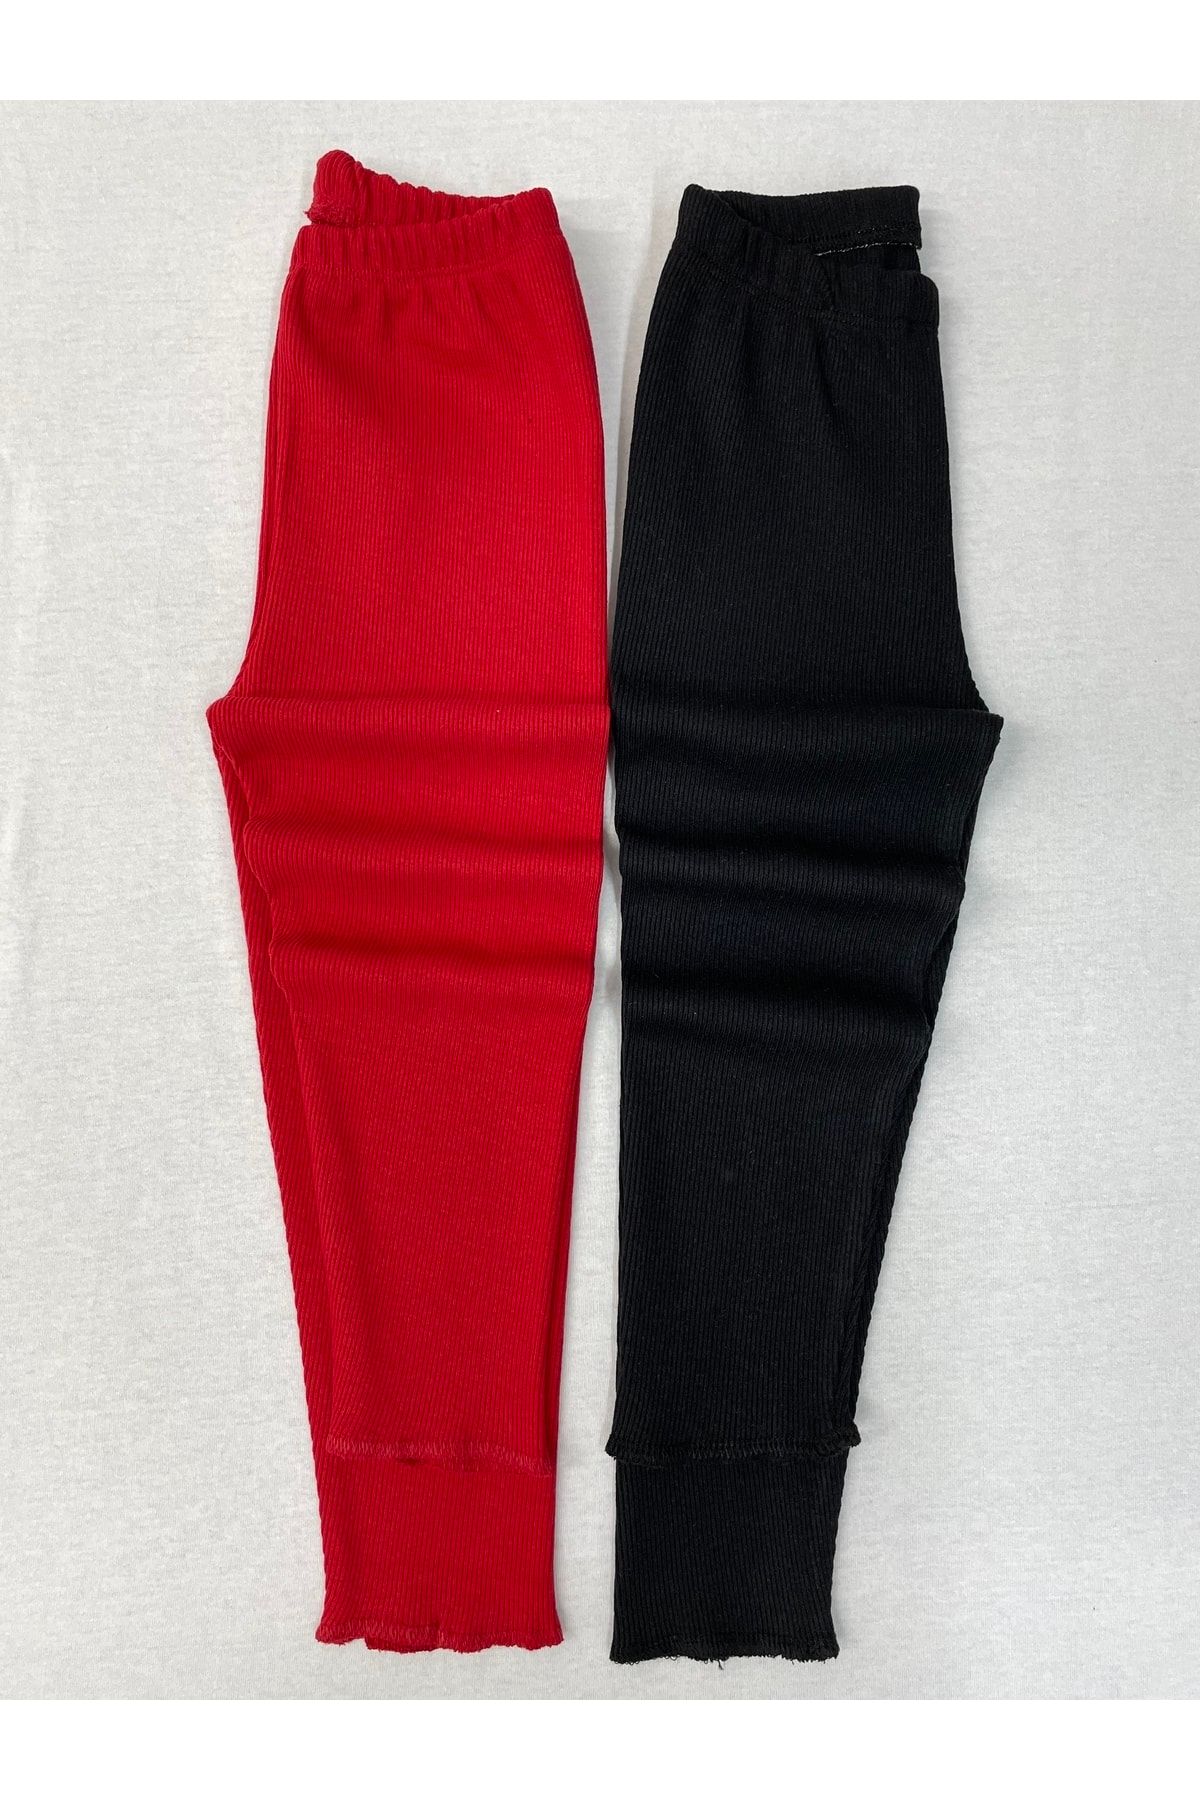 Berat moda Esnek Fitilli Siyah - Kırmızı 2li Kız-erkek Kışlık Çocuk Tayt